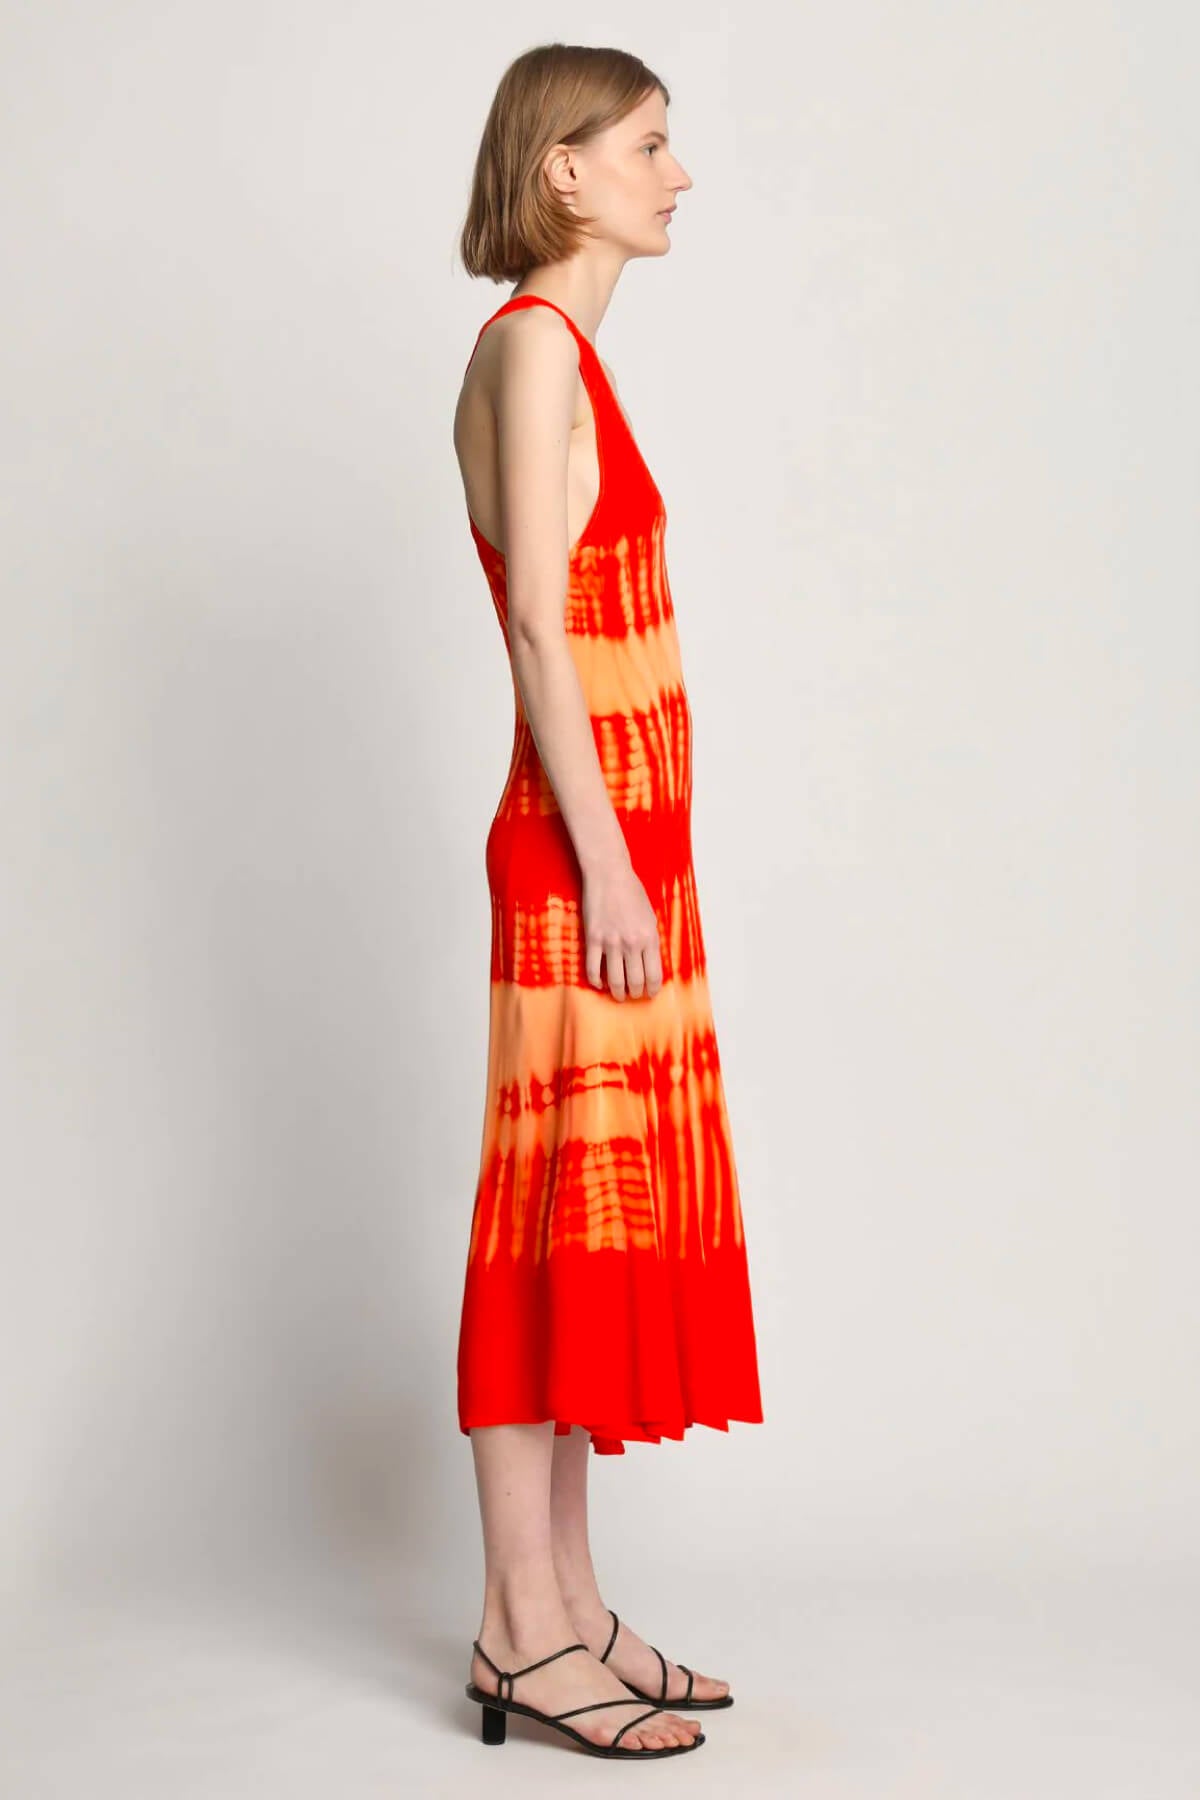 Proenza Schouler Viscose Knit Tie Dye Dress - Orange Multi